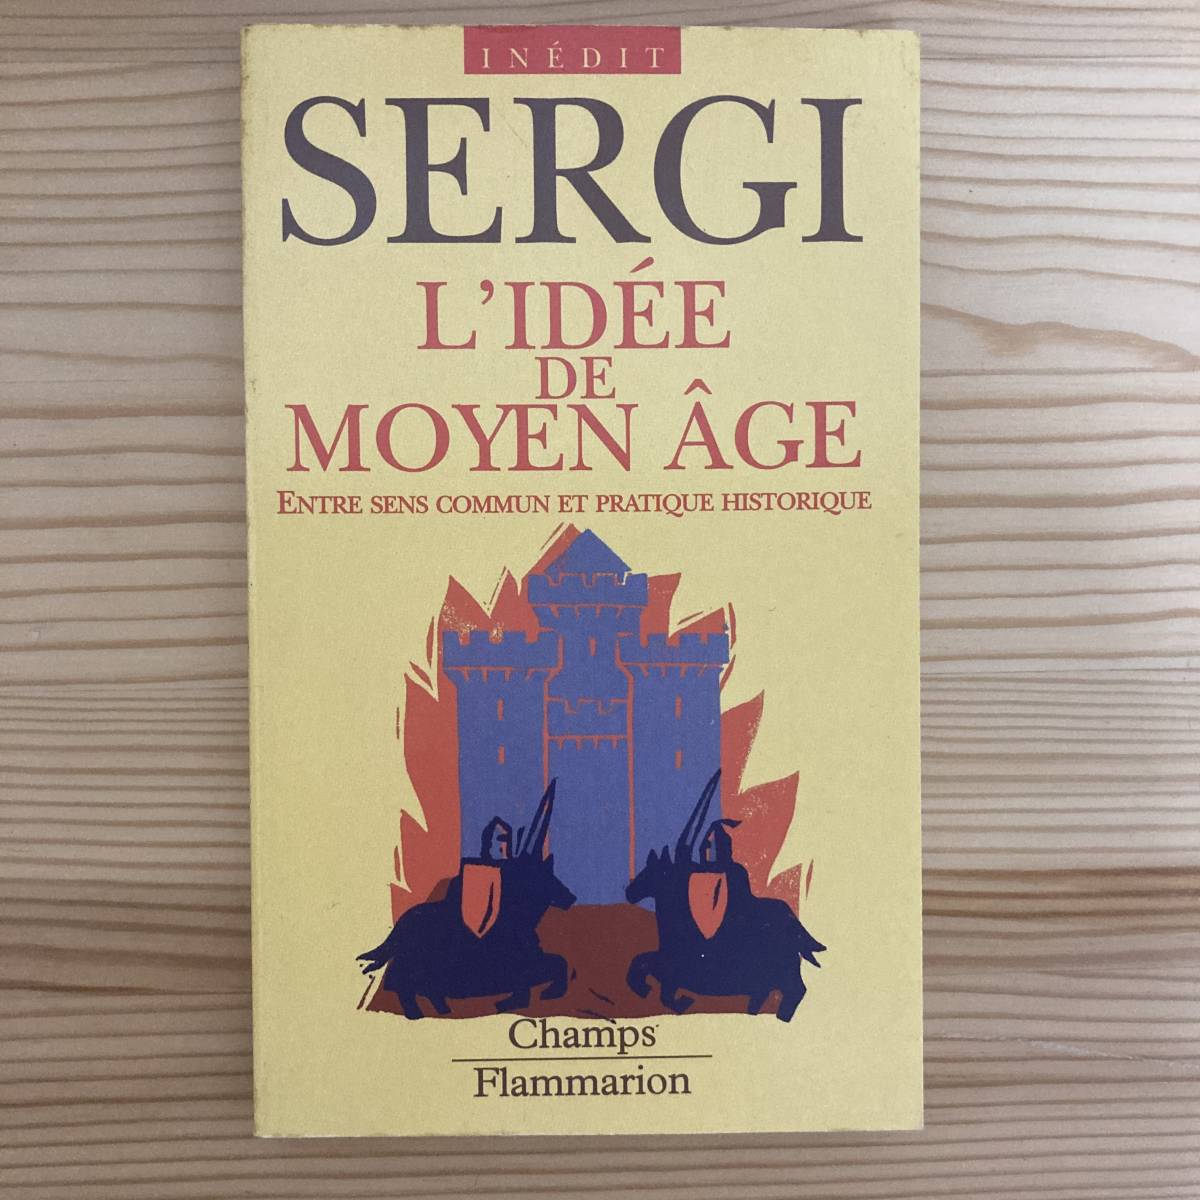 【仏語洋書】L'IDEE DE MOYEN AGE / ジュゼッペ・セルギ Giuseppe Sergi（著）_画像1